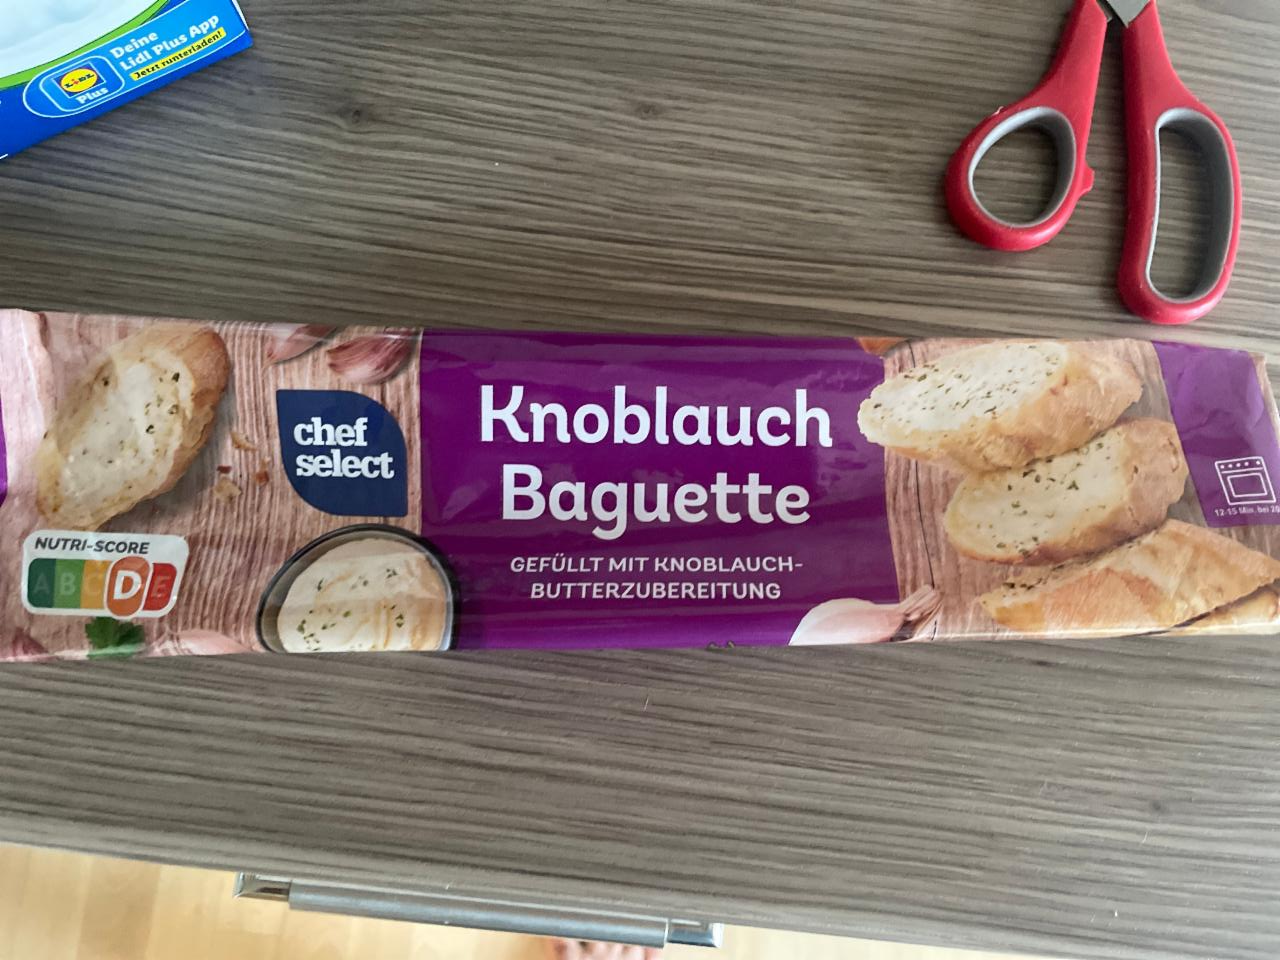 Baguette калорийность, Knolauch Select - пищевая ⋙ ценность Chef